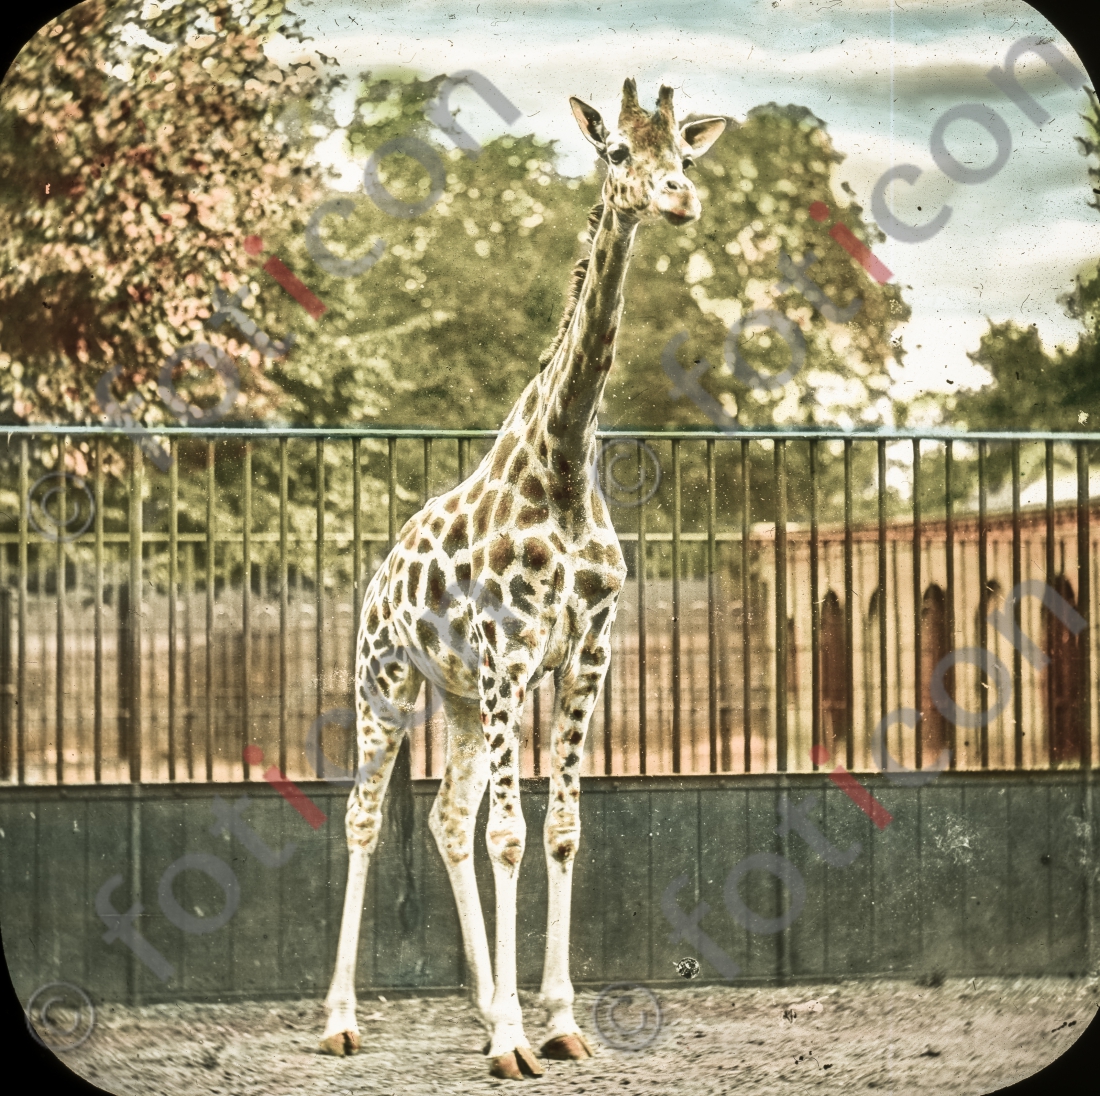 Giraffe | Giraffe - Foto foticon-simon-167-037.jpg | foticon.de - Bilddatenbank für Motive aus Geschichte und Kultur